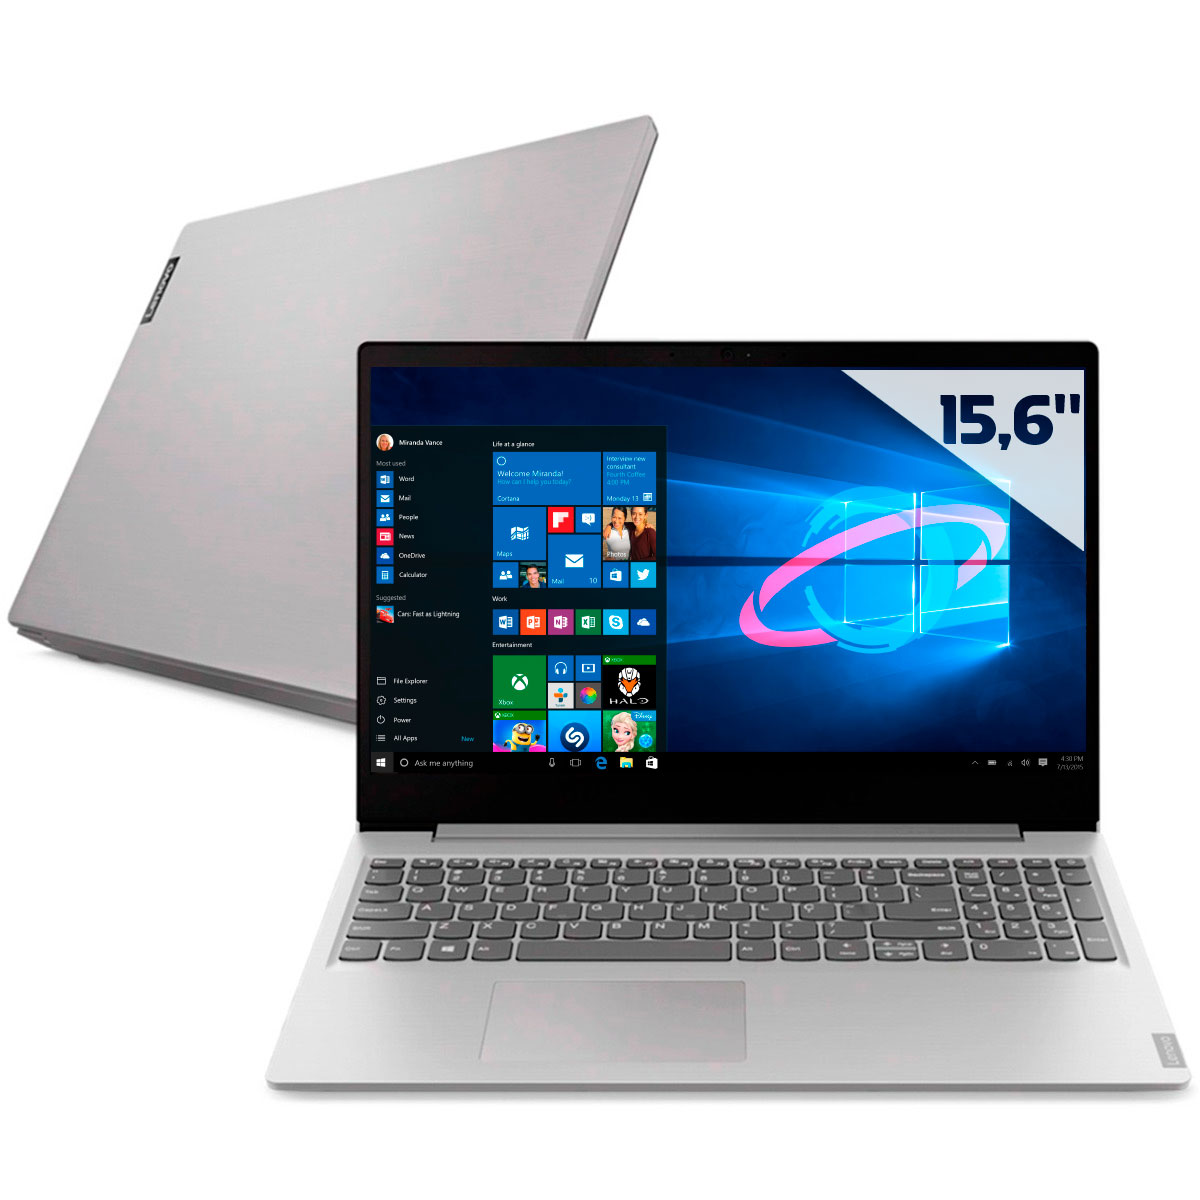 Notebook Lenovo Ideapad S145 - Intel i3 8130U, 8GB, SSD 128GB + HD 1TB, Tela 15.6